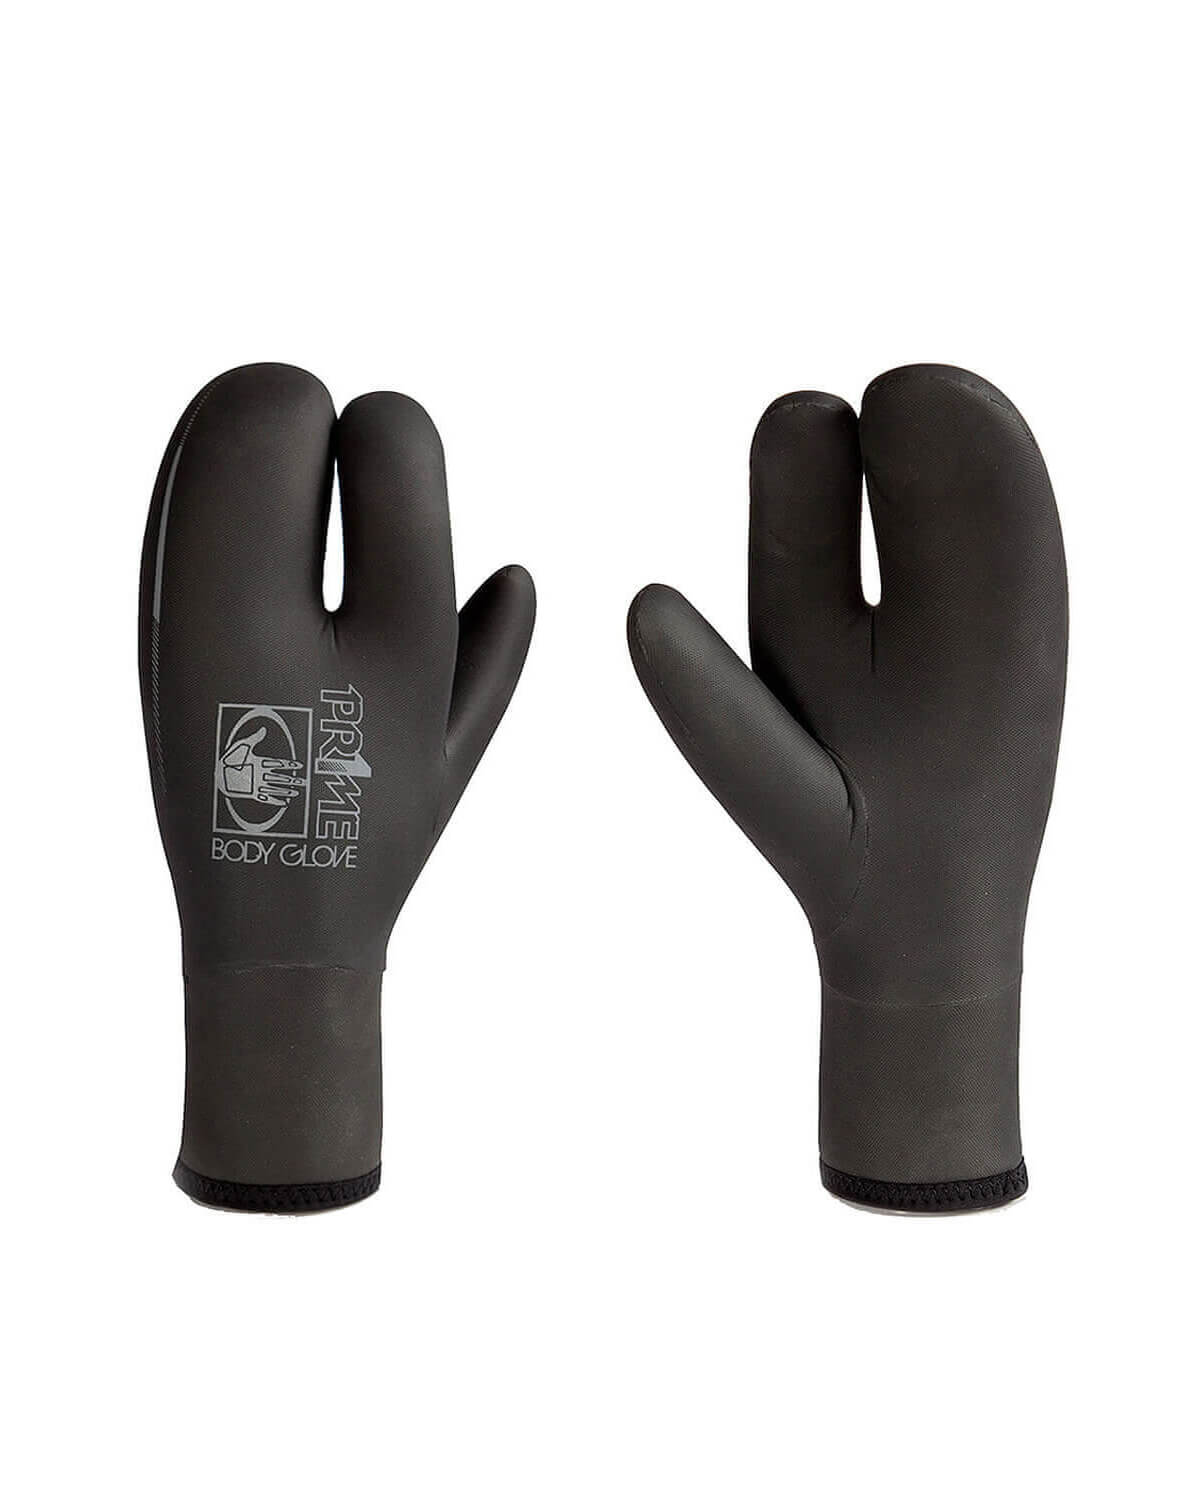 5mm Body Glove PR1ME Claw Wetsuit Gloves